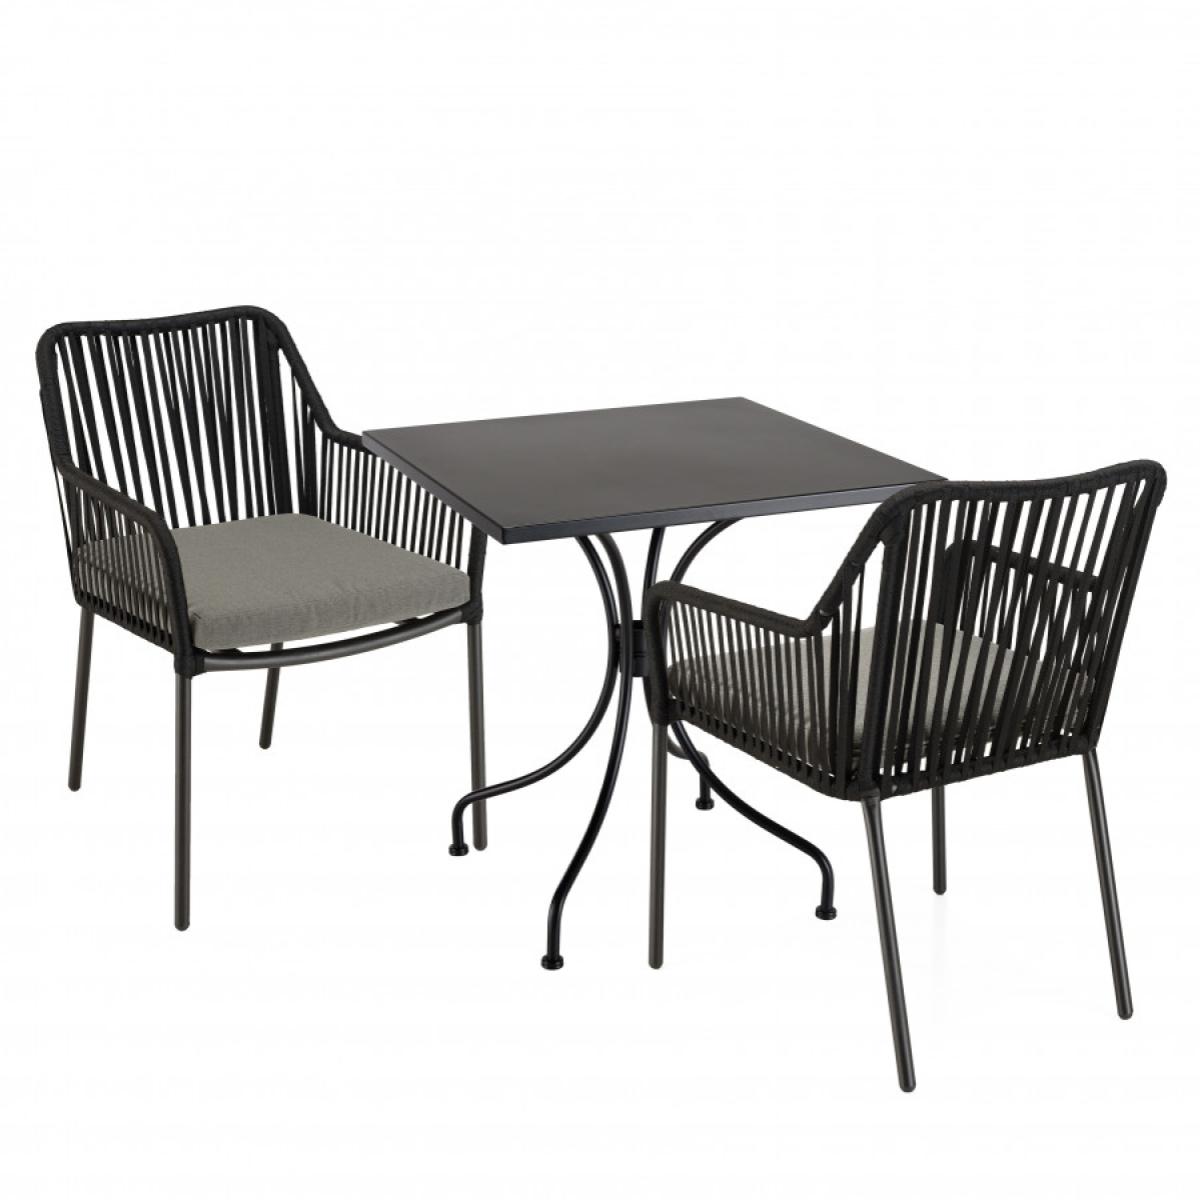 MALO - SALON DE JARDIN 2 PERS. - Table carrée 70x70cm et 2 fauteuils gris et noirs en cordage